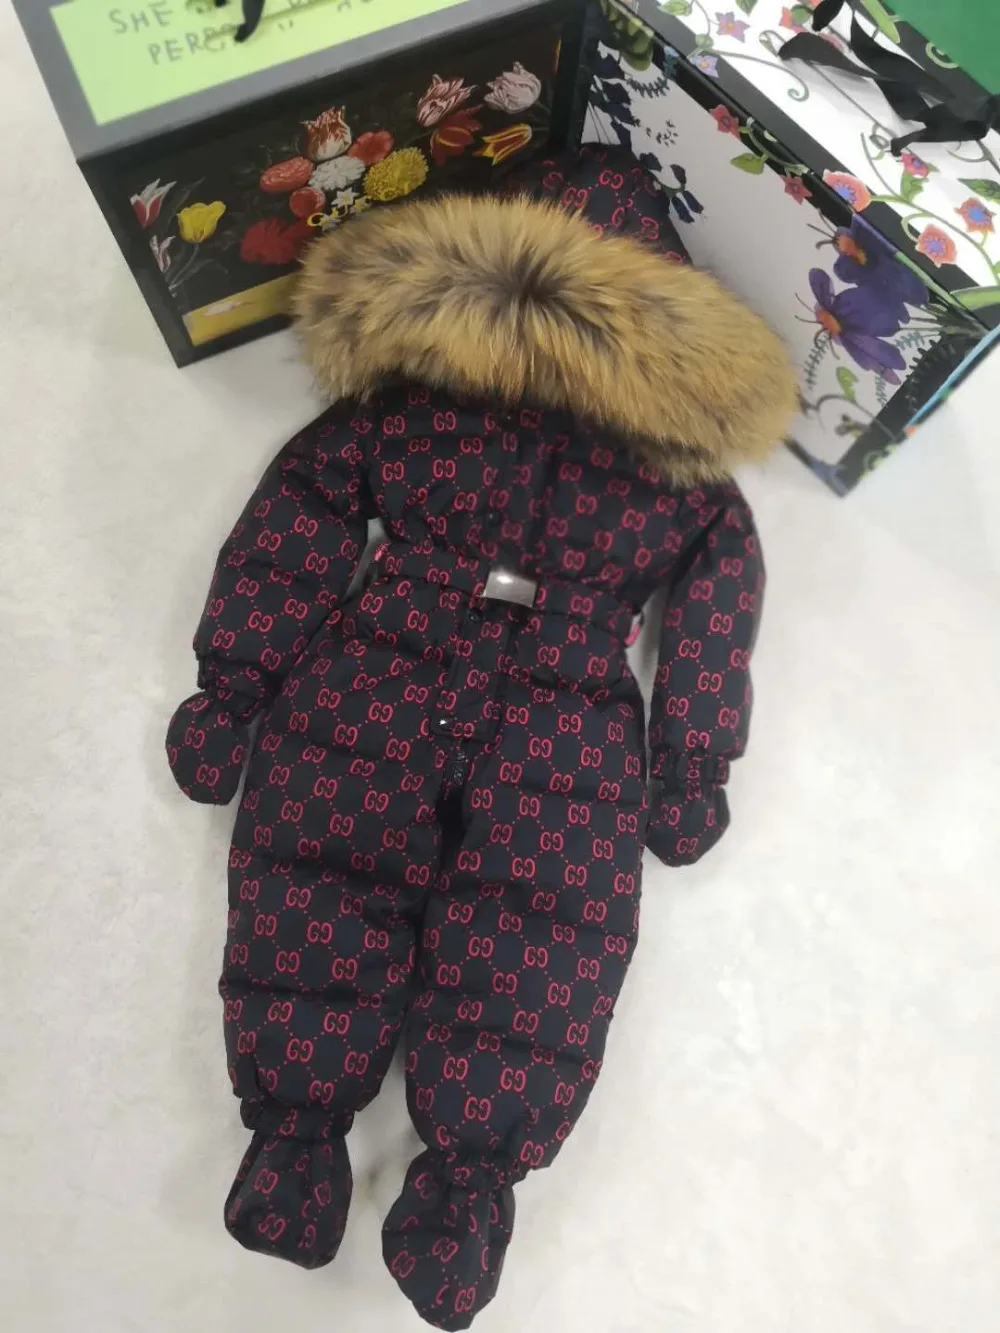 Детская верхняя одежда с капюшоном и натуральным мехом; коллекция года; зимняя куртка; детские куртки; Детский комбинезон; зимний костюм; пуховые комбинезоны с цветочным рисунком для маленьких мальчиков и девочек